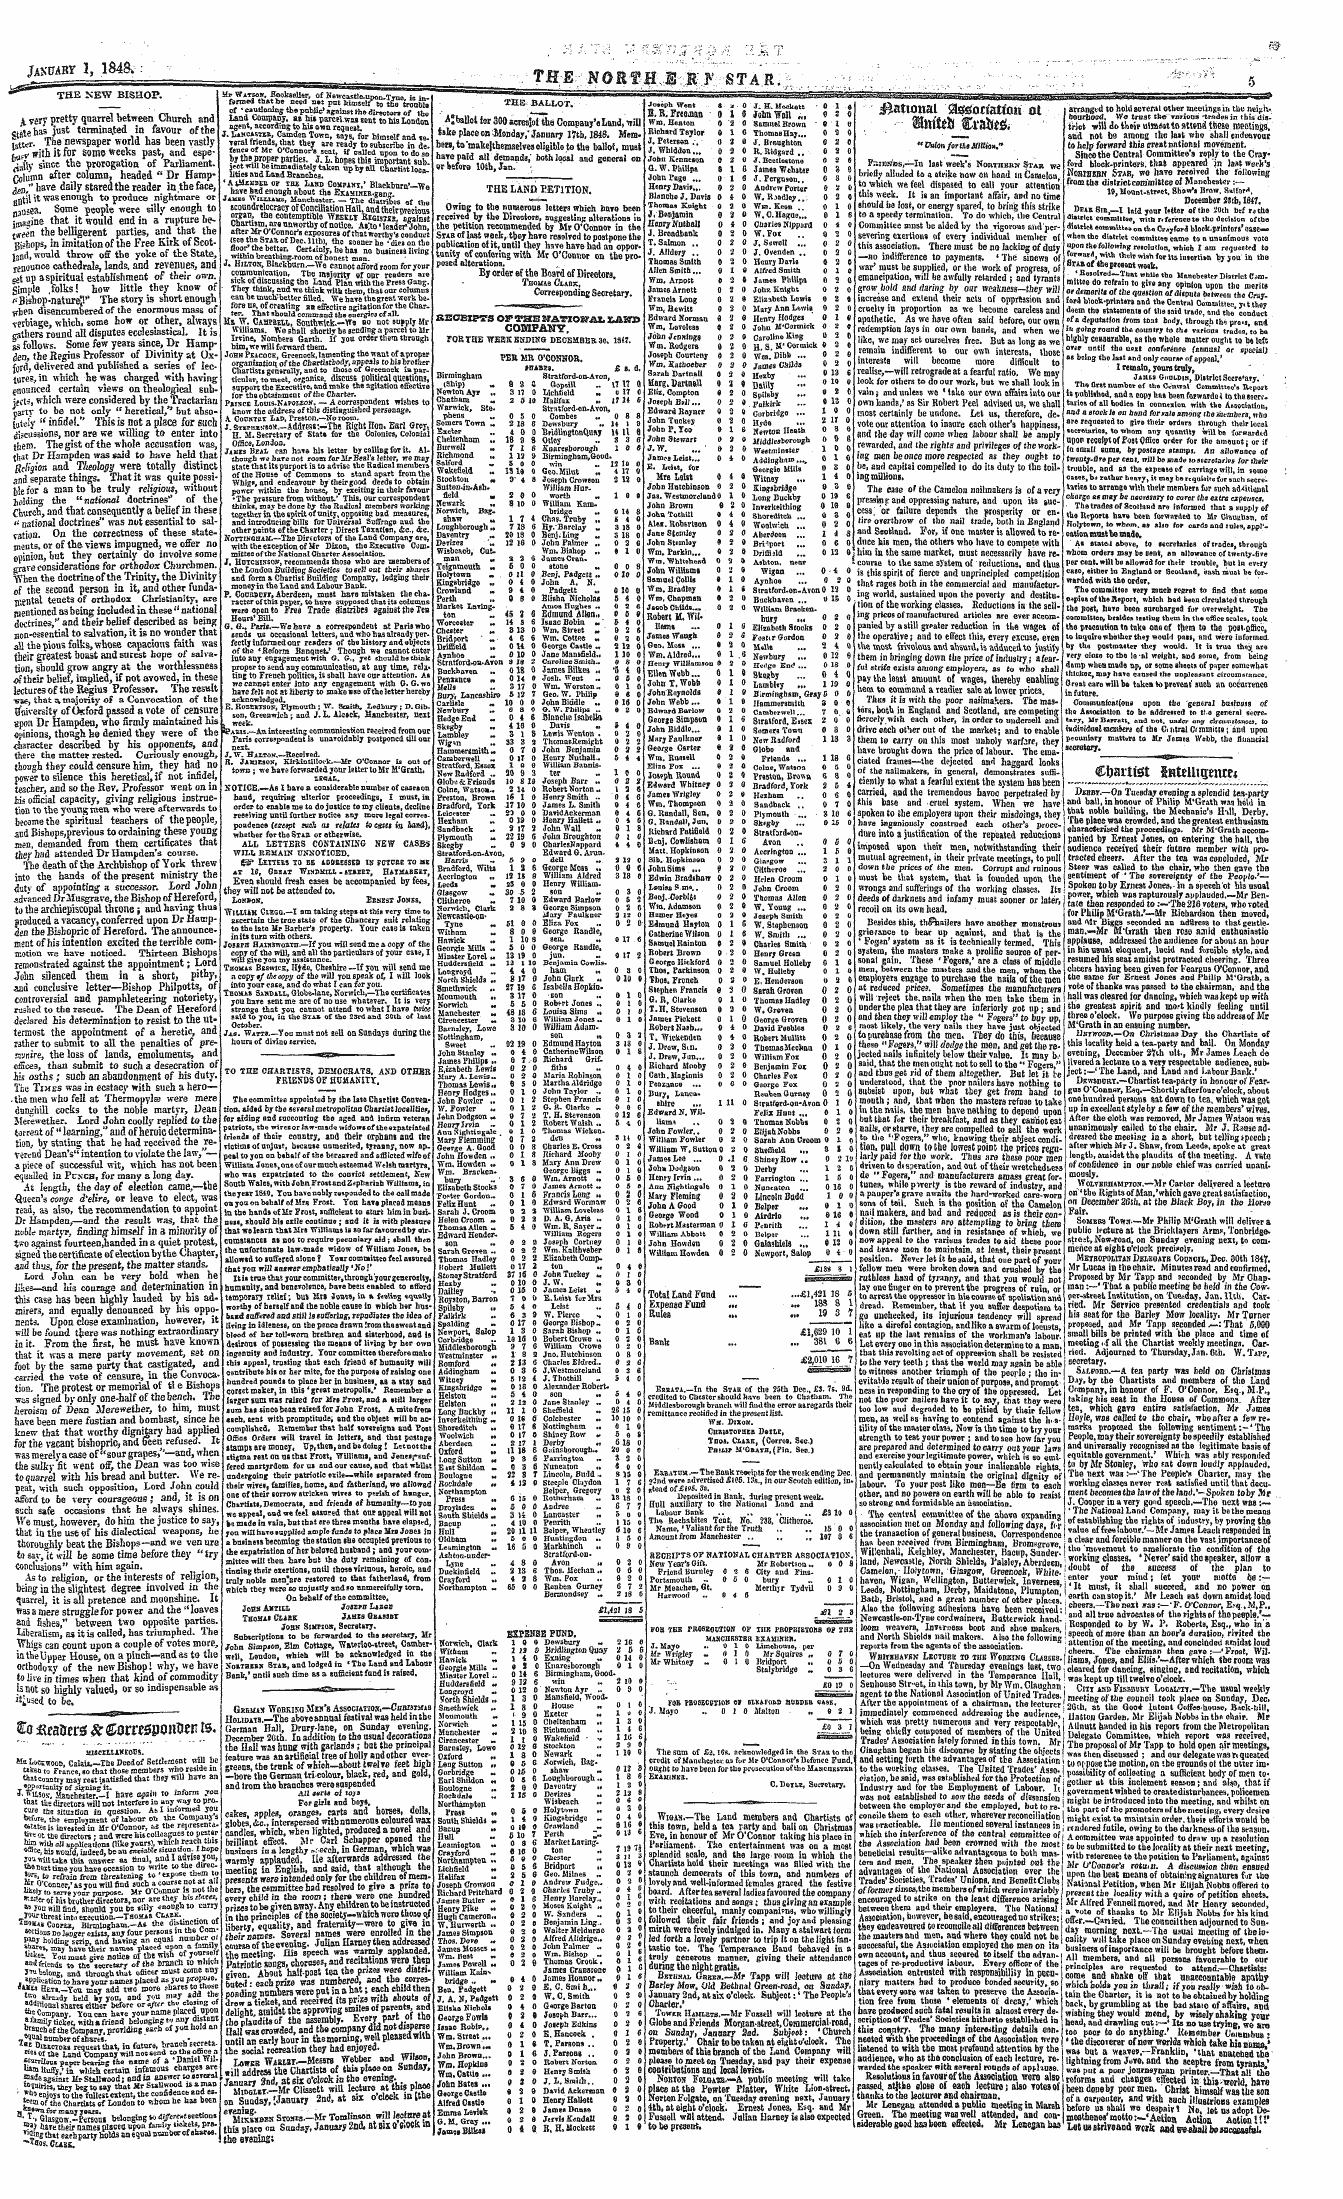 Northern Star (1837-1852): jS F Y, 2nd edition - Geewax Wobkiko Meh'b Assocutios,—Christm...